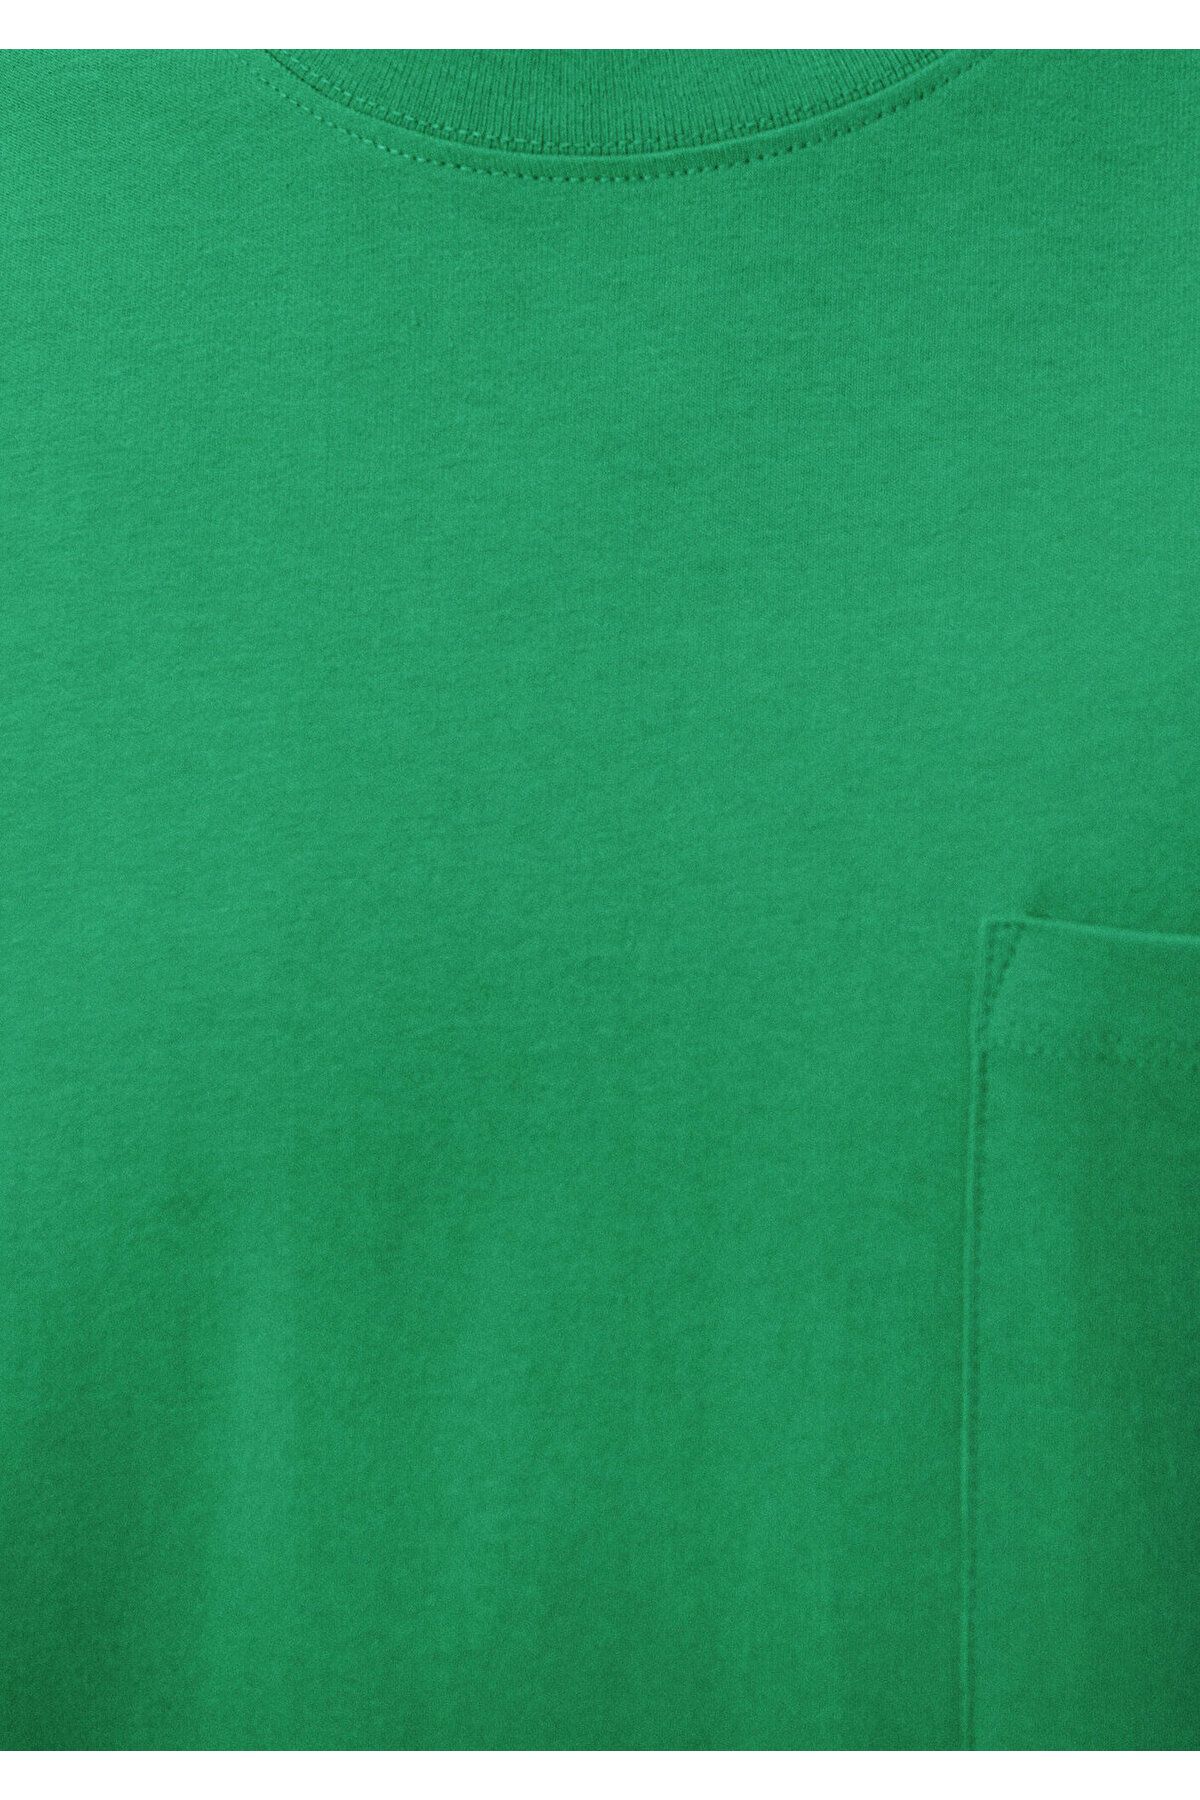 Mavi تی شرت اساسی سبز تناسب